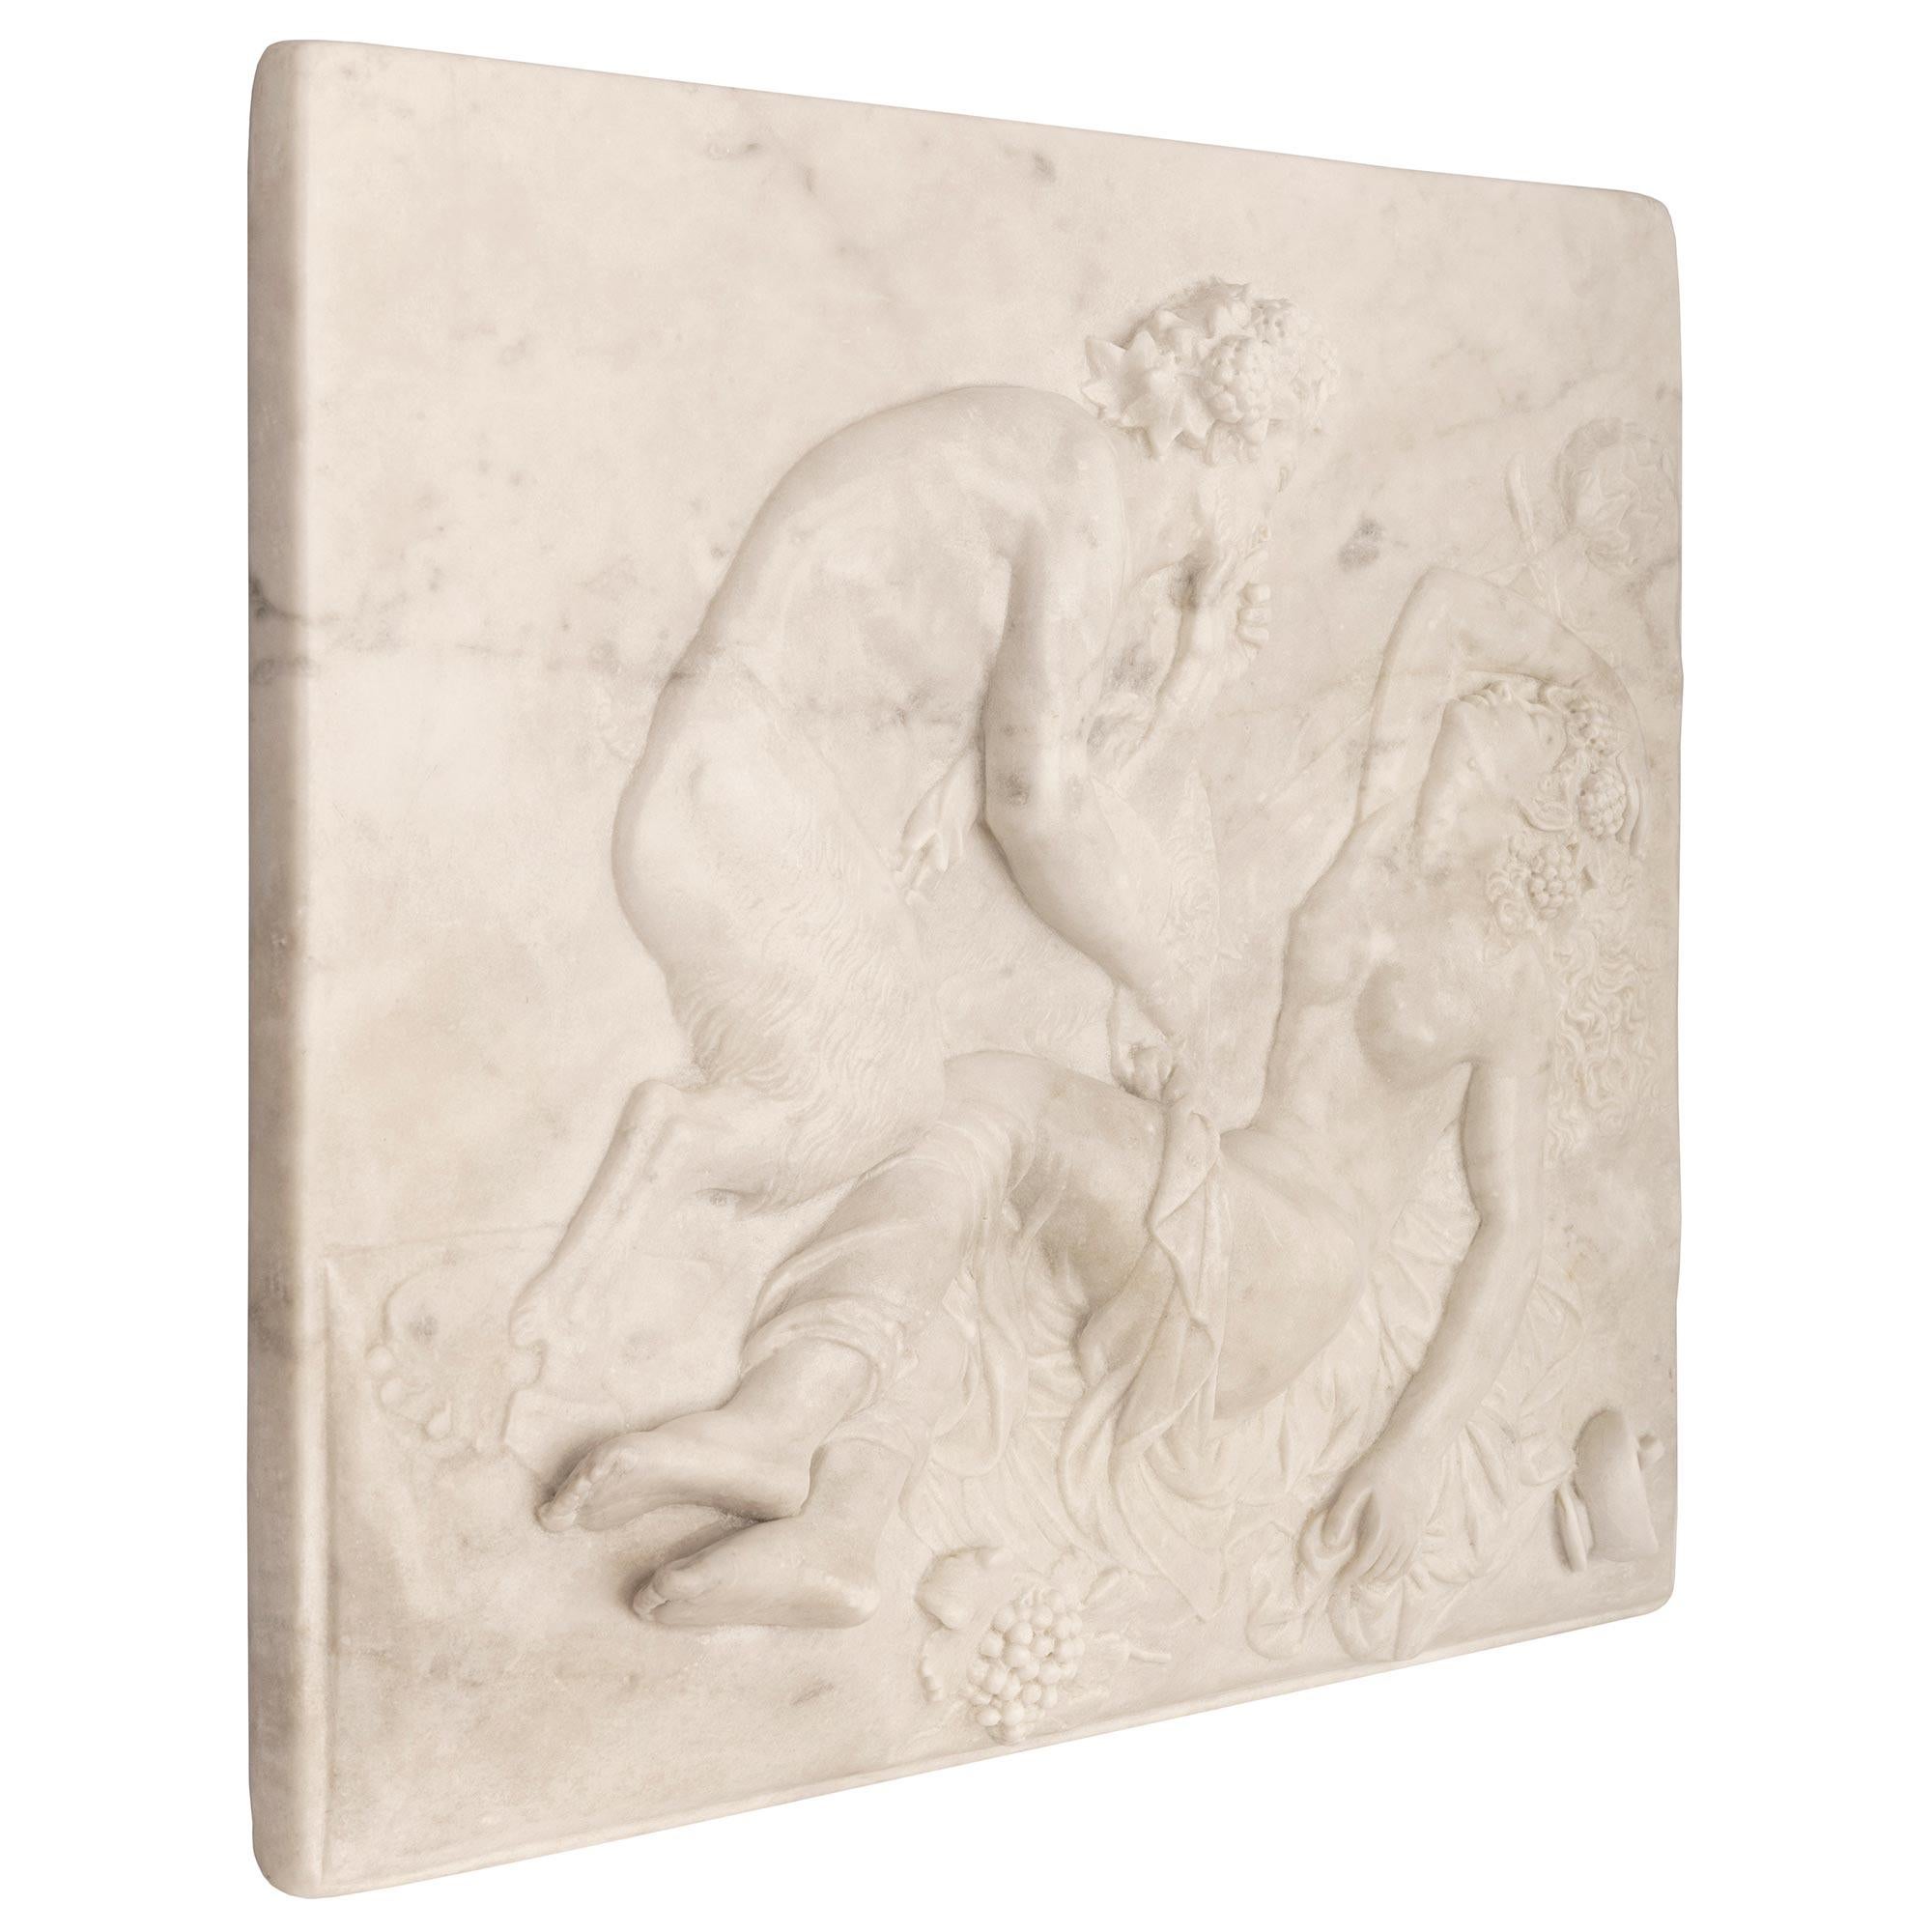 Eine atemberaubende und äußerst dekorative italienische neoklassische Wandtafel aus dem 19. Grand Tour Periode weißem Carrara-Marmor dekorative Wandtafel. Die wunderschön gearbeitete Tafel zeigt eine reich gearbeitete Szene eines bacchantischen